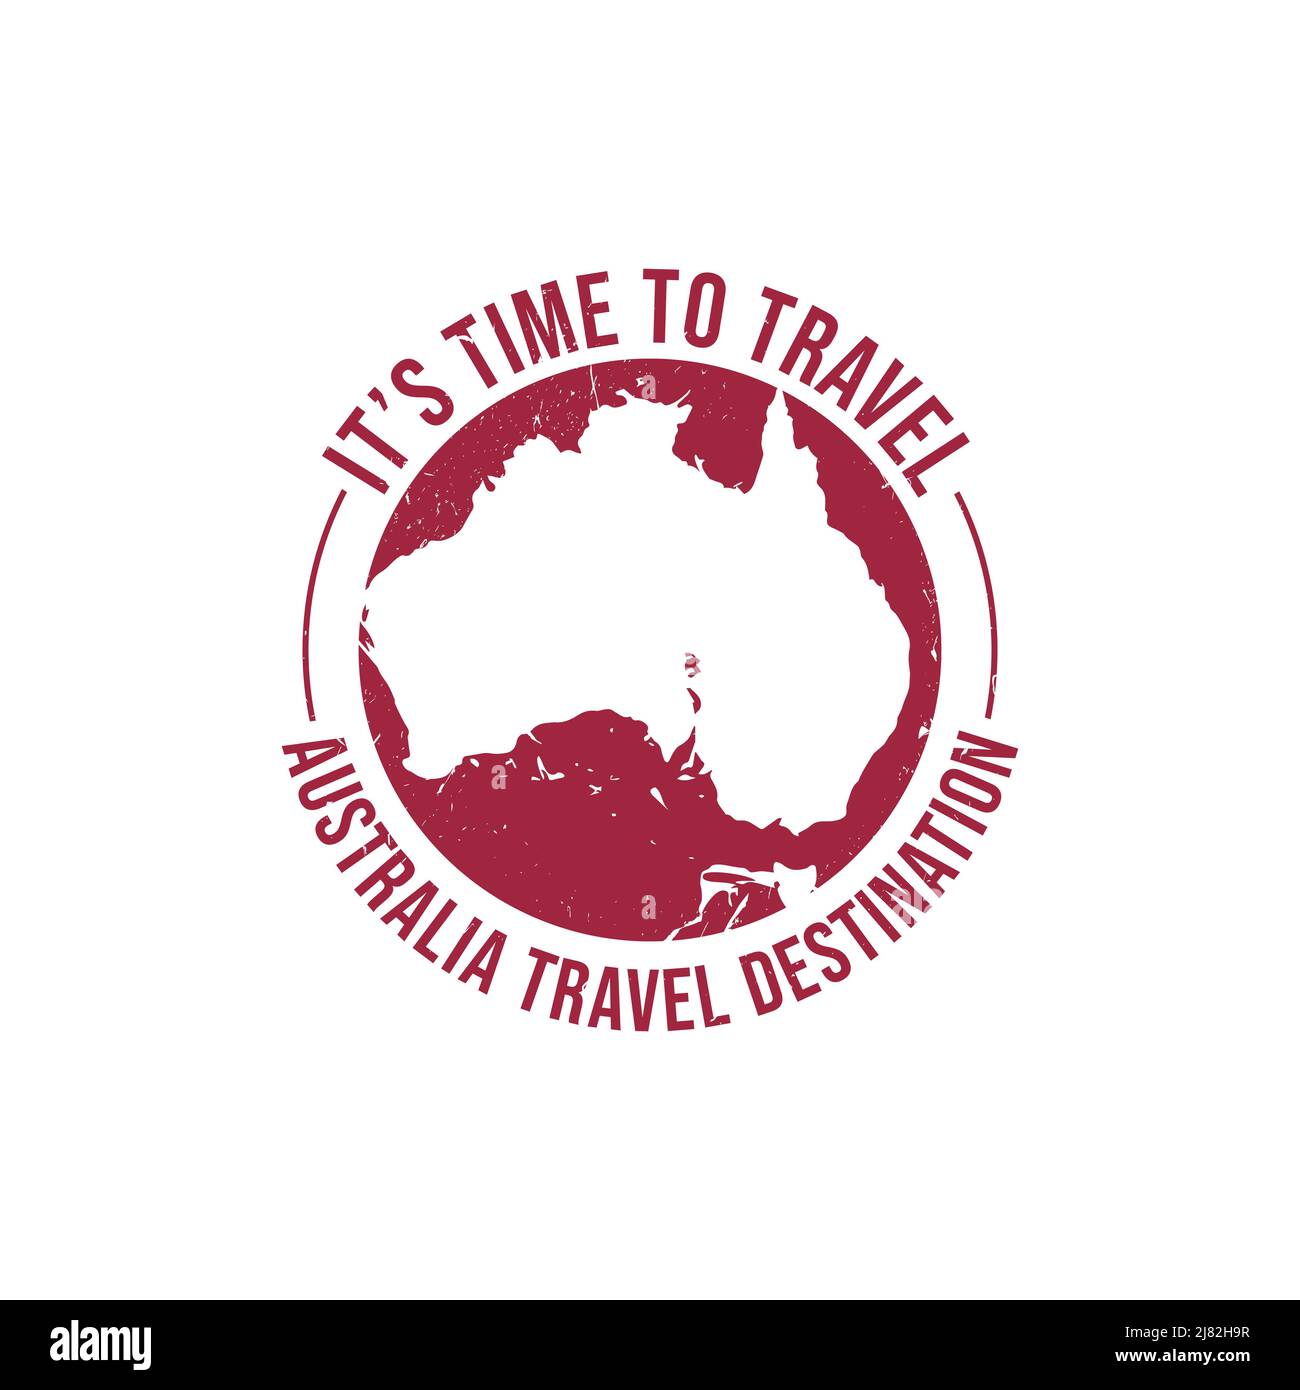 Grunge Gummistempel mit dem Text Australien Icon Karte Reise Ziel in der Marke geschrieben. Australien Reiseziel Grunge Stempel Stock Vektor